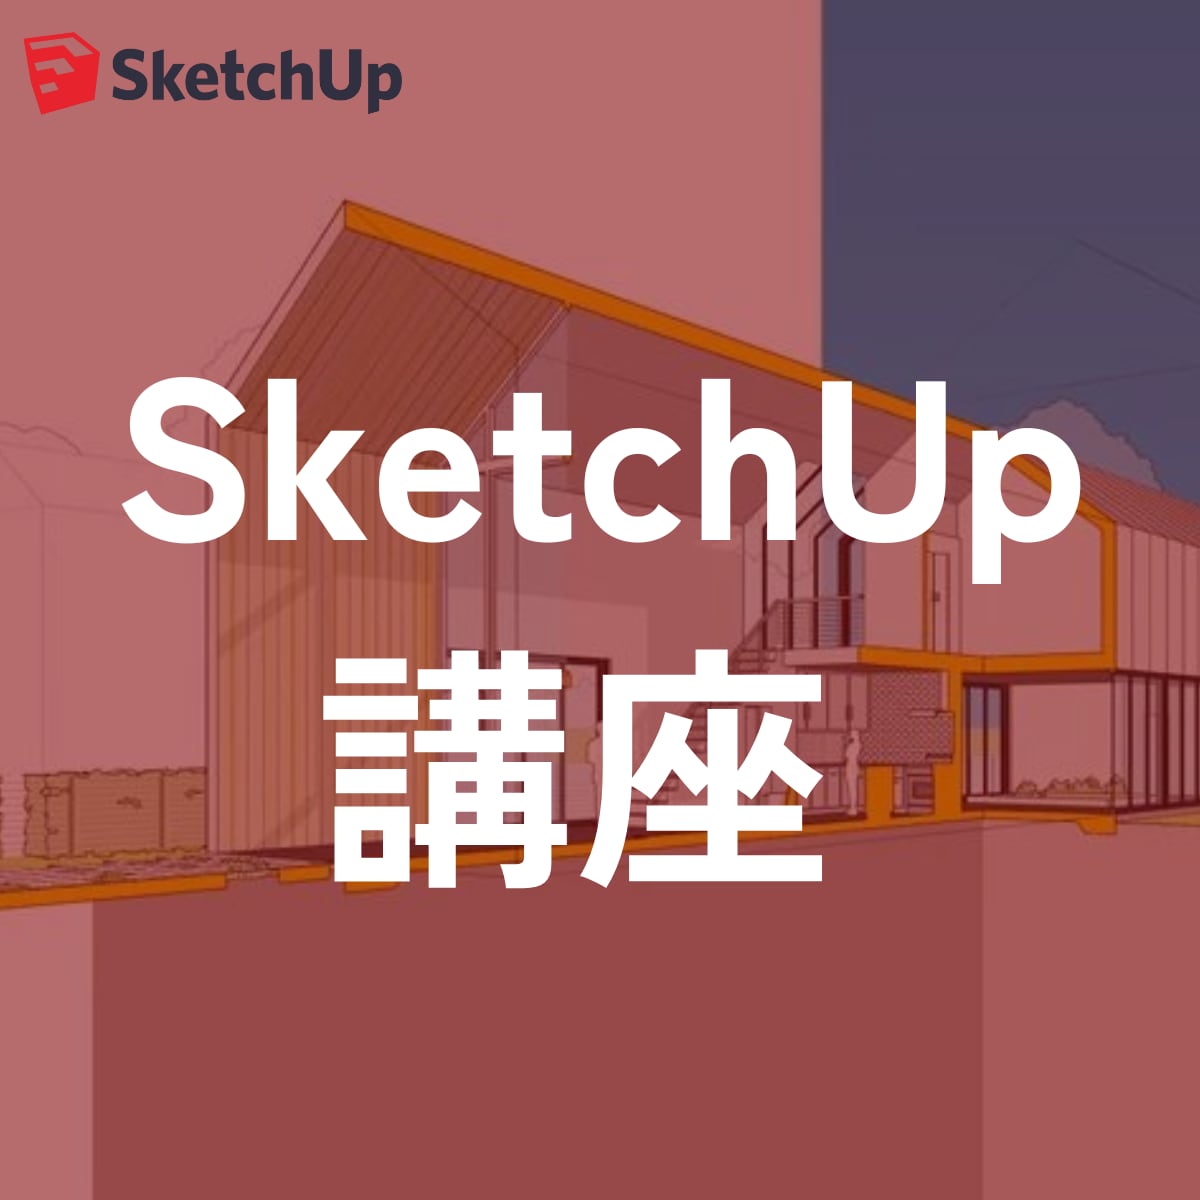 プロによるSketchUp指導サービスます SketchUp公認資格保持者による徹底オンライン指導 イメージ1